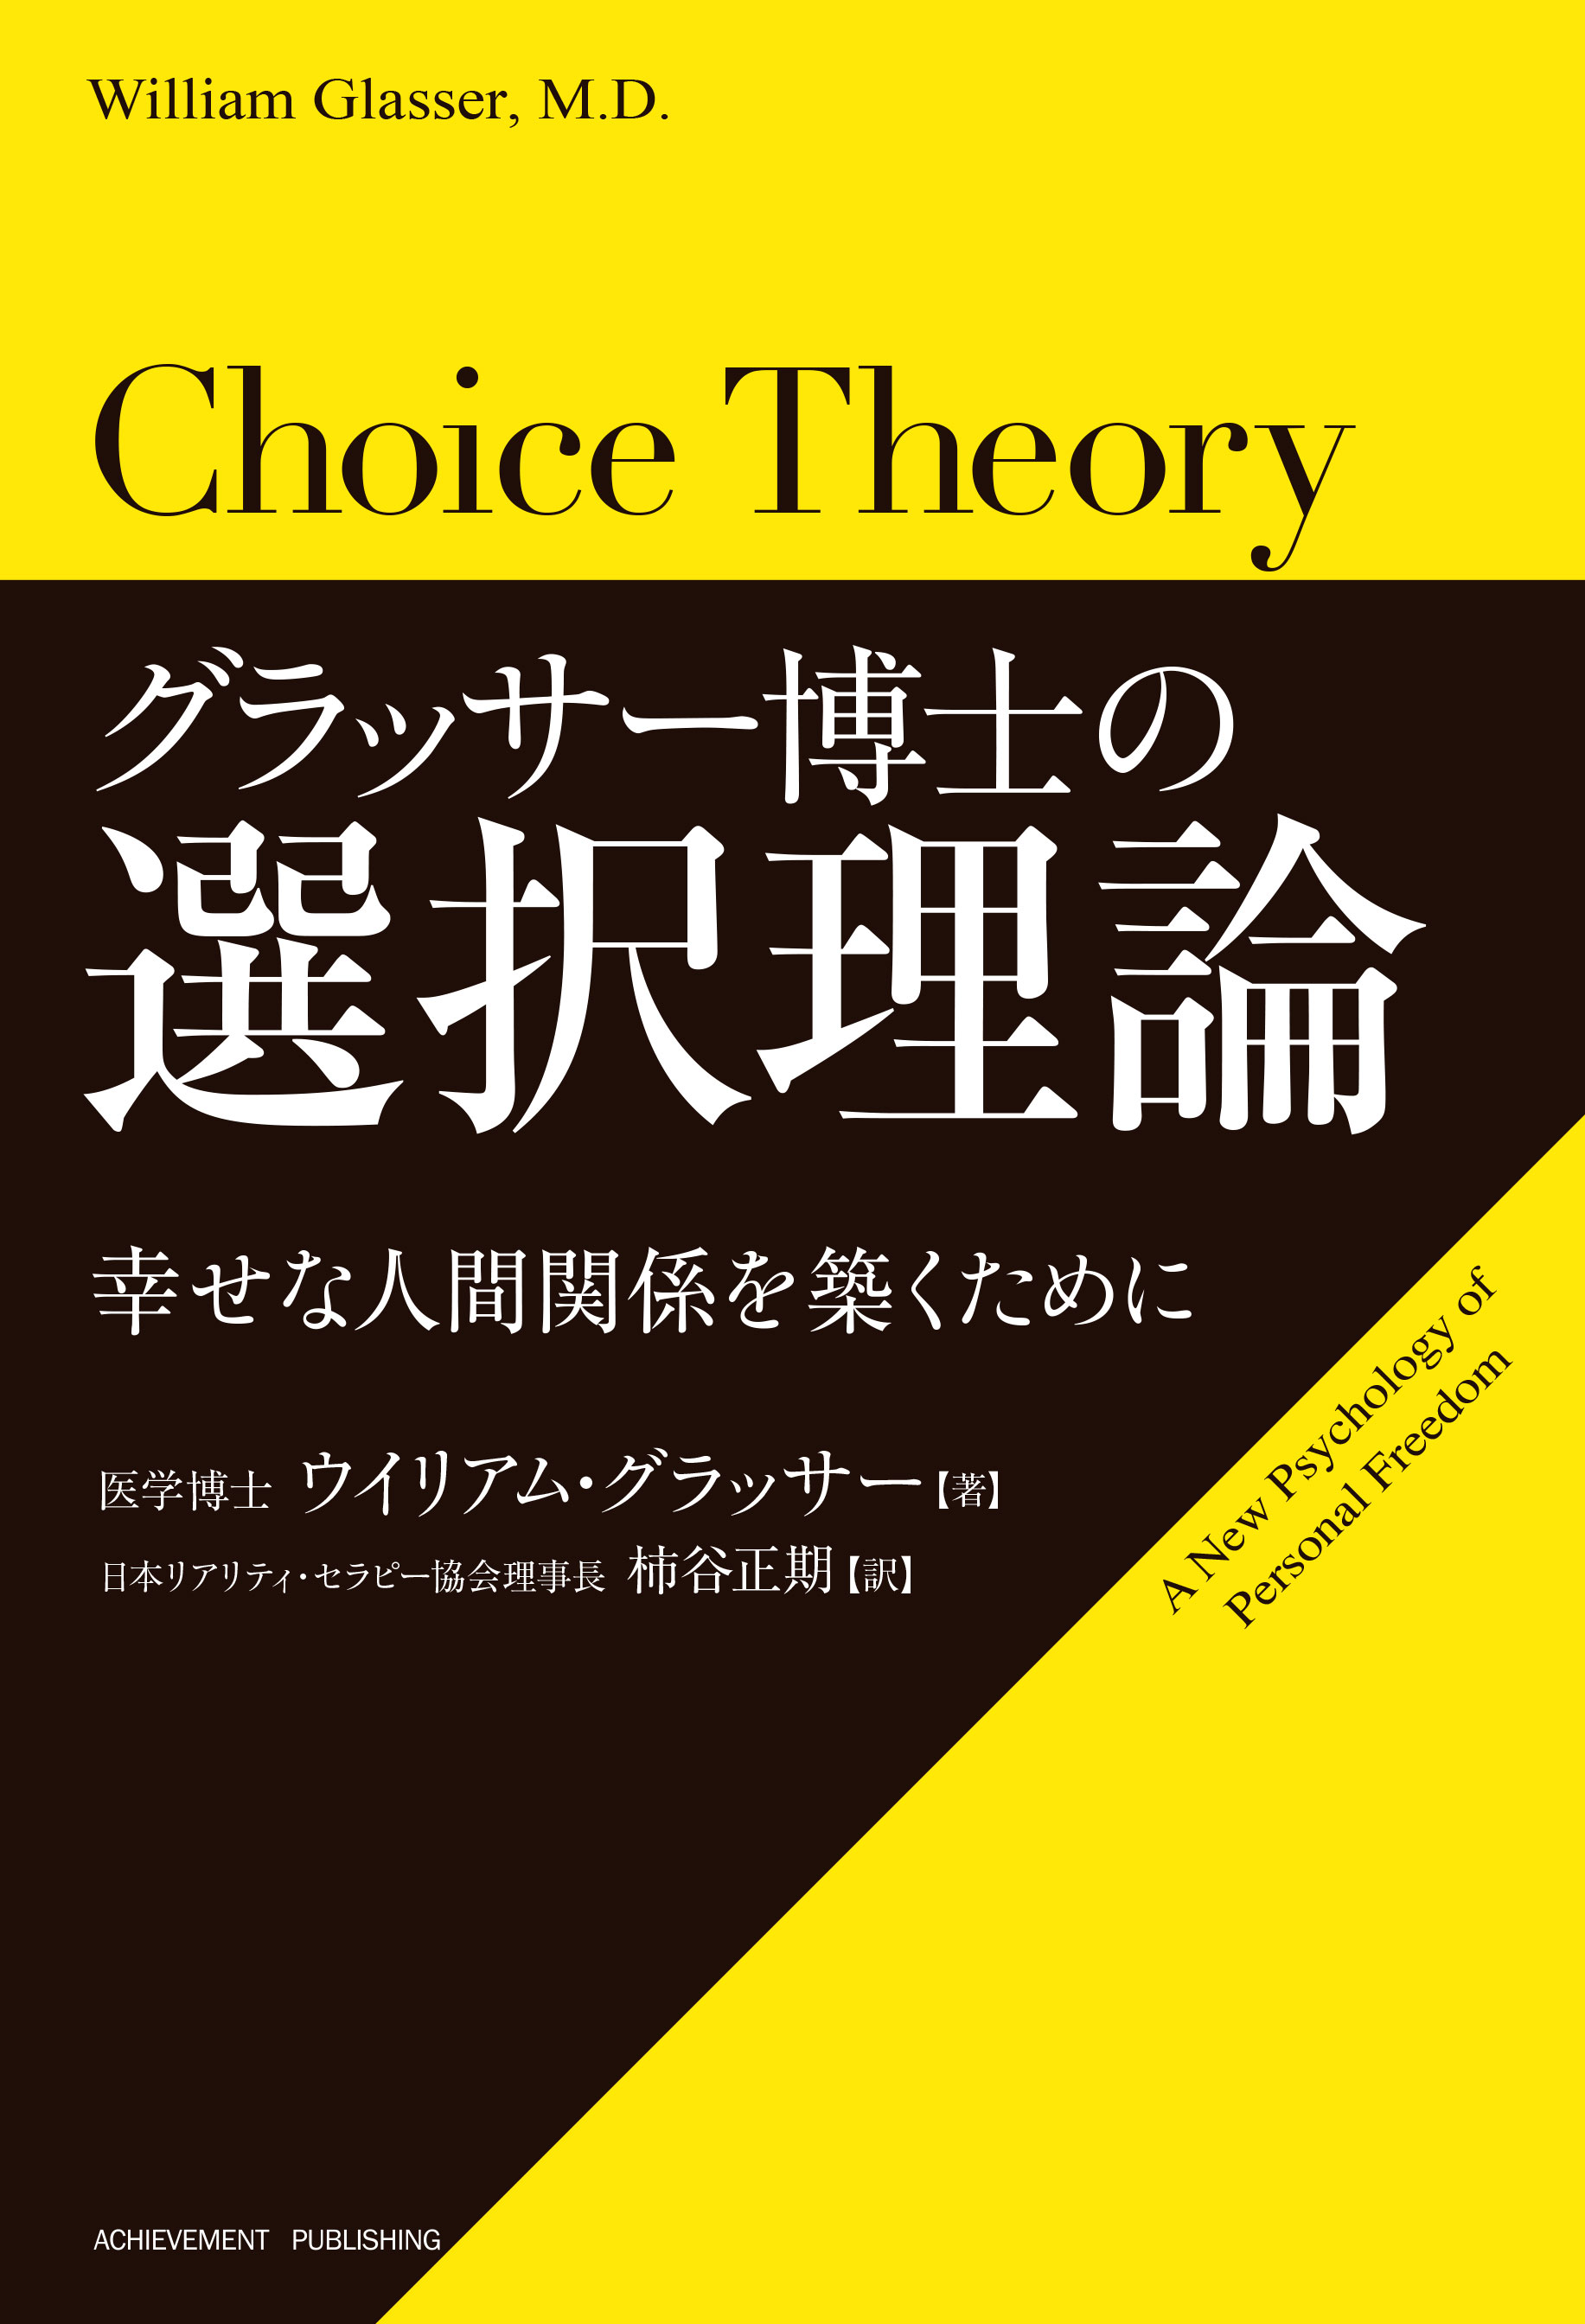 グラッサー博士の選択理論 | アチーブメント出版株式会社